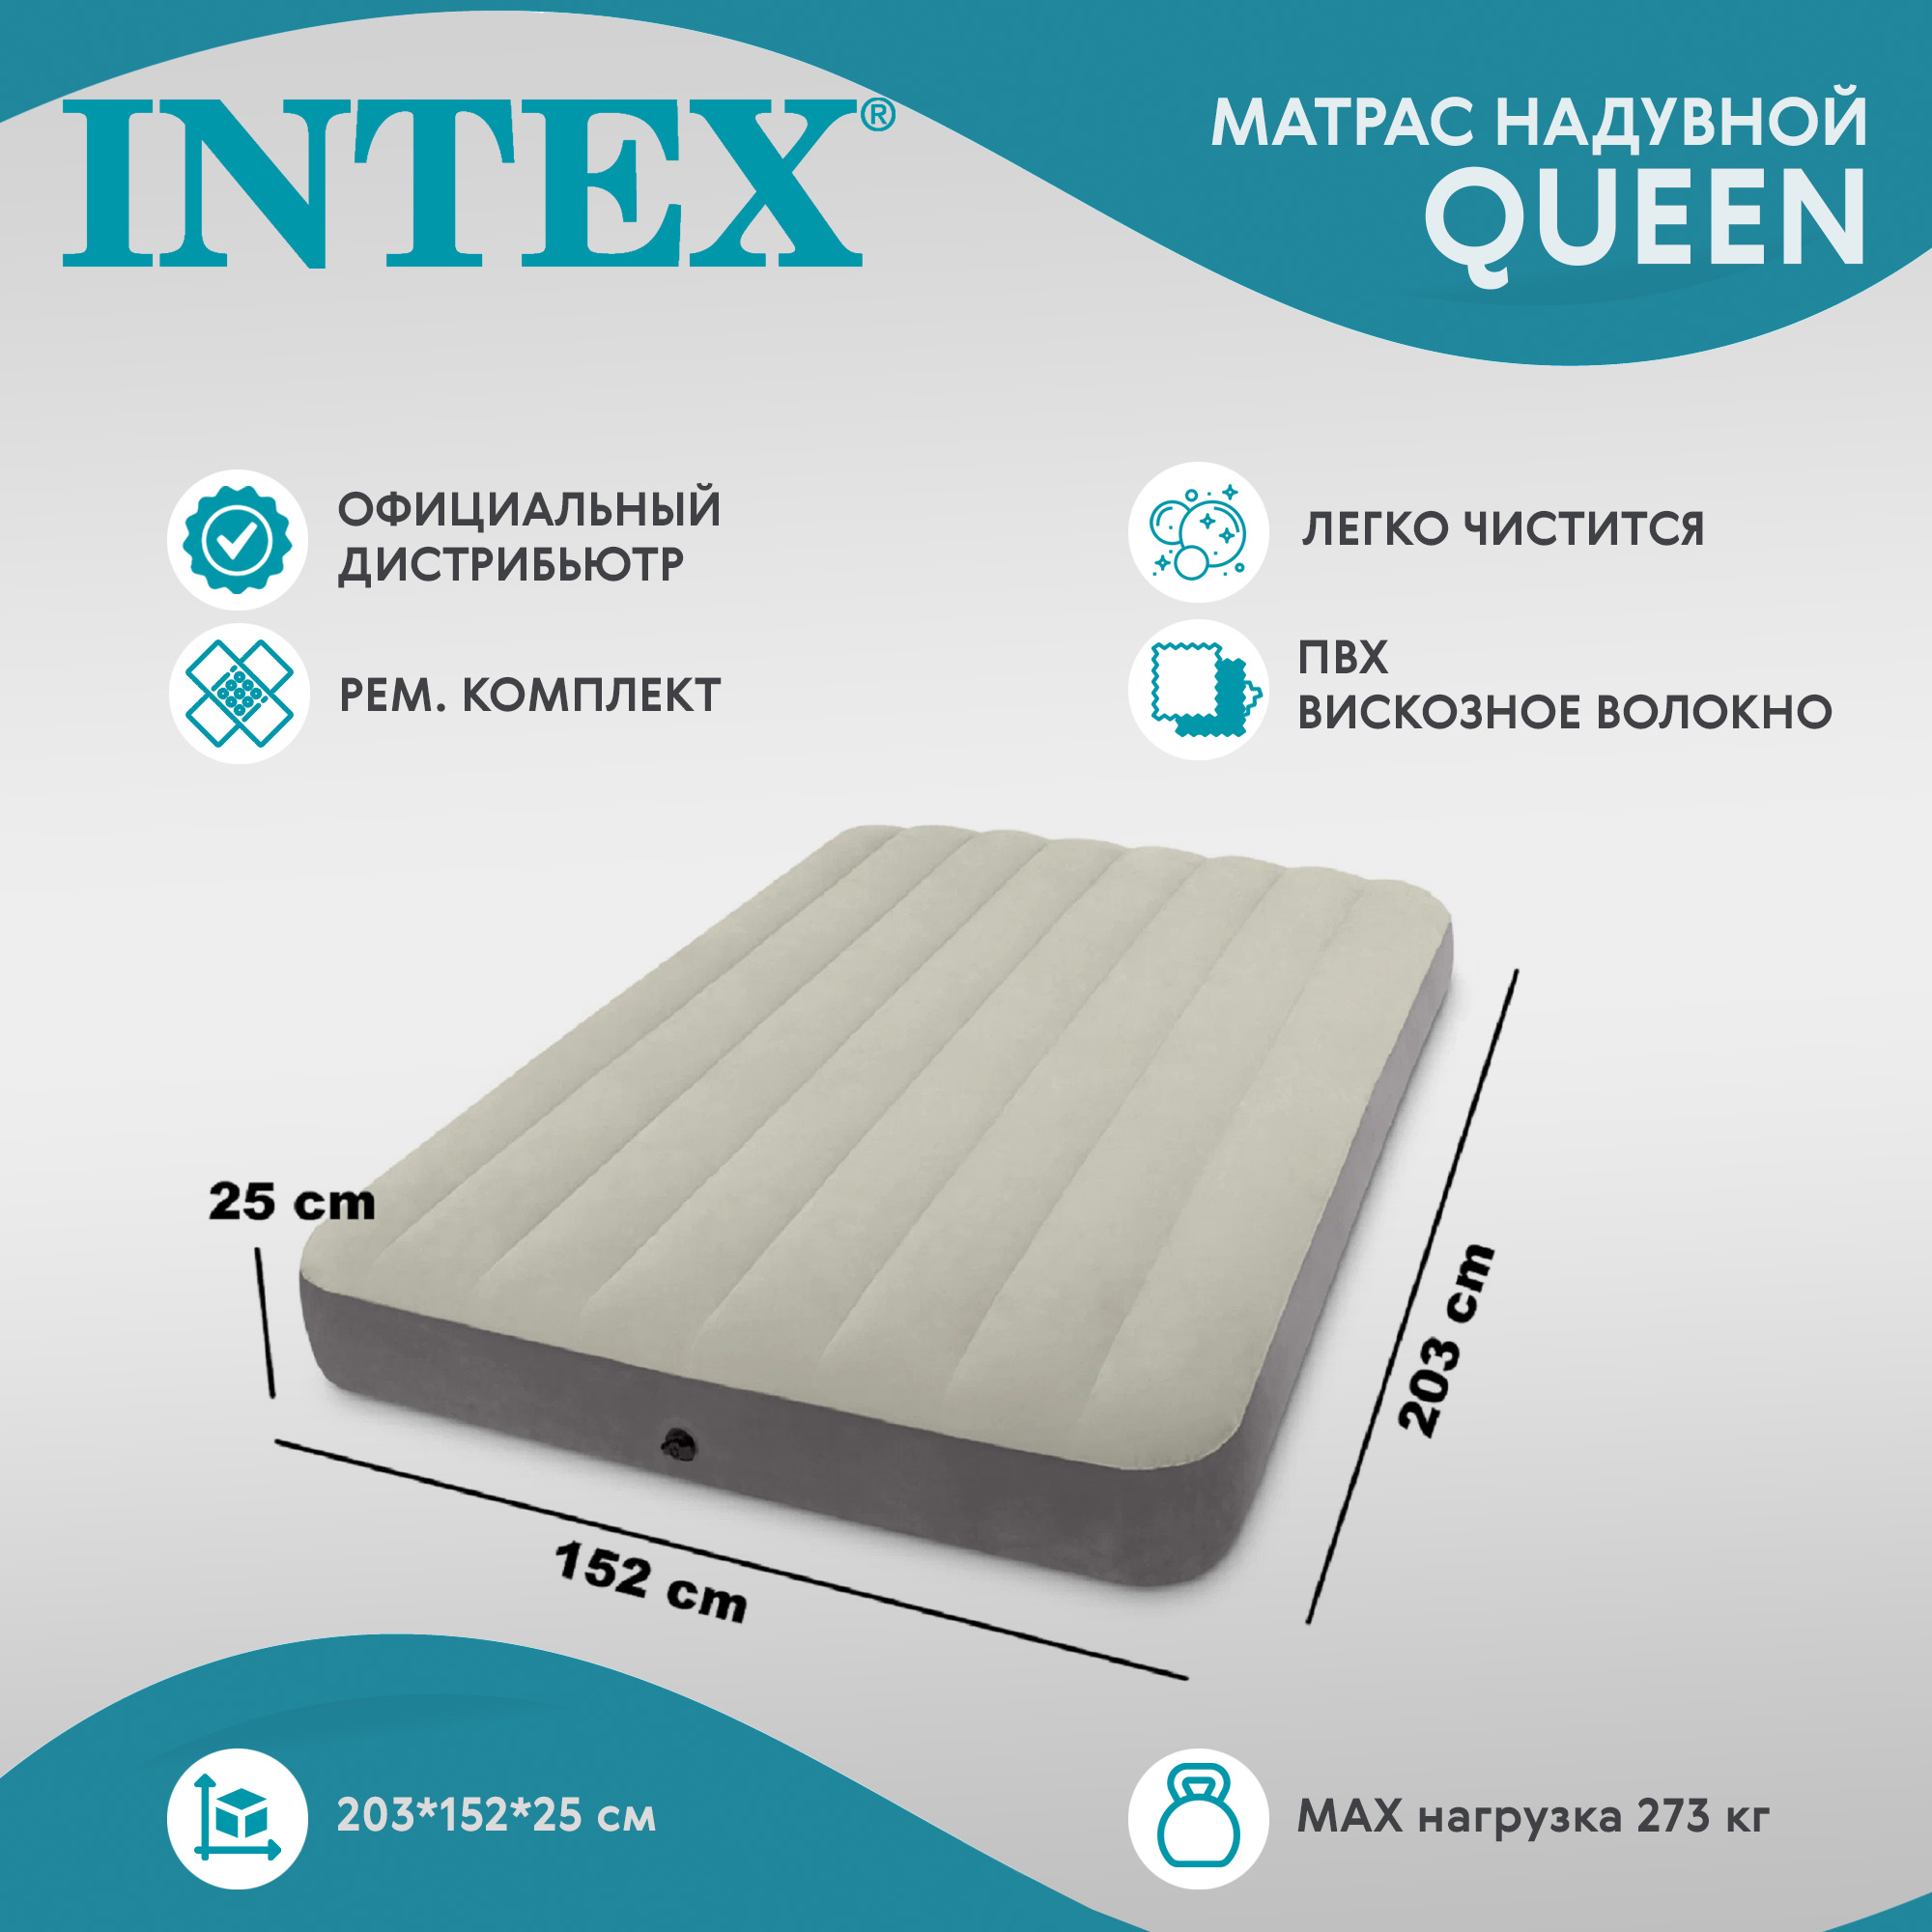 Матрас одинарный надувной Intex queen 152х203х25 см - фото 2